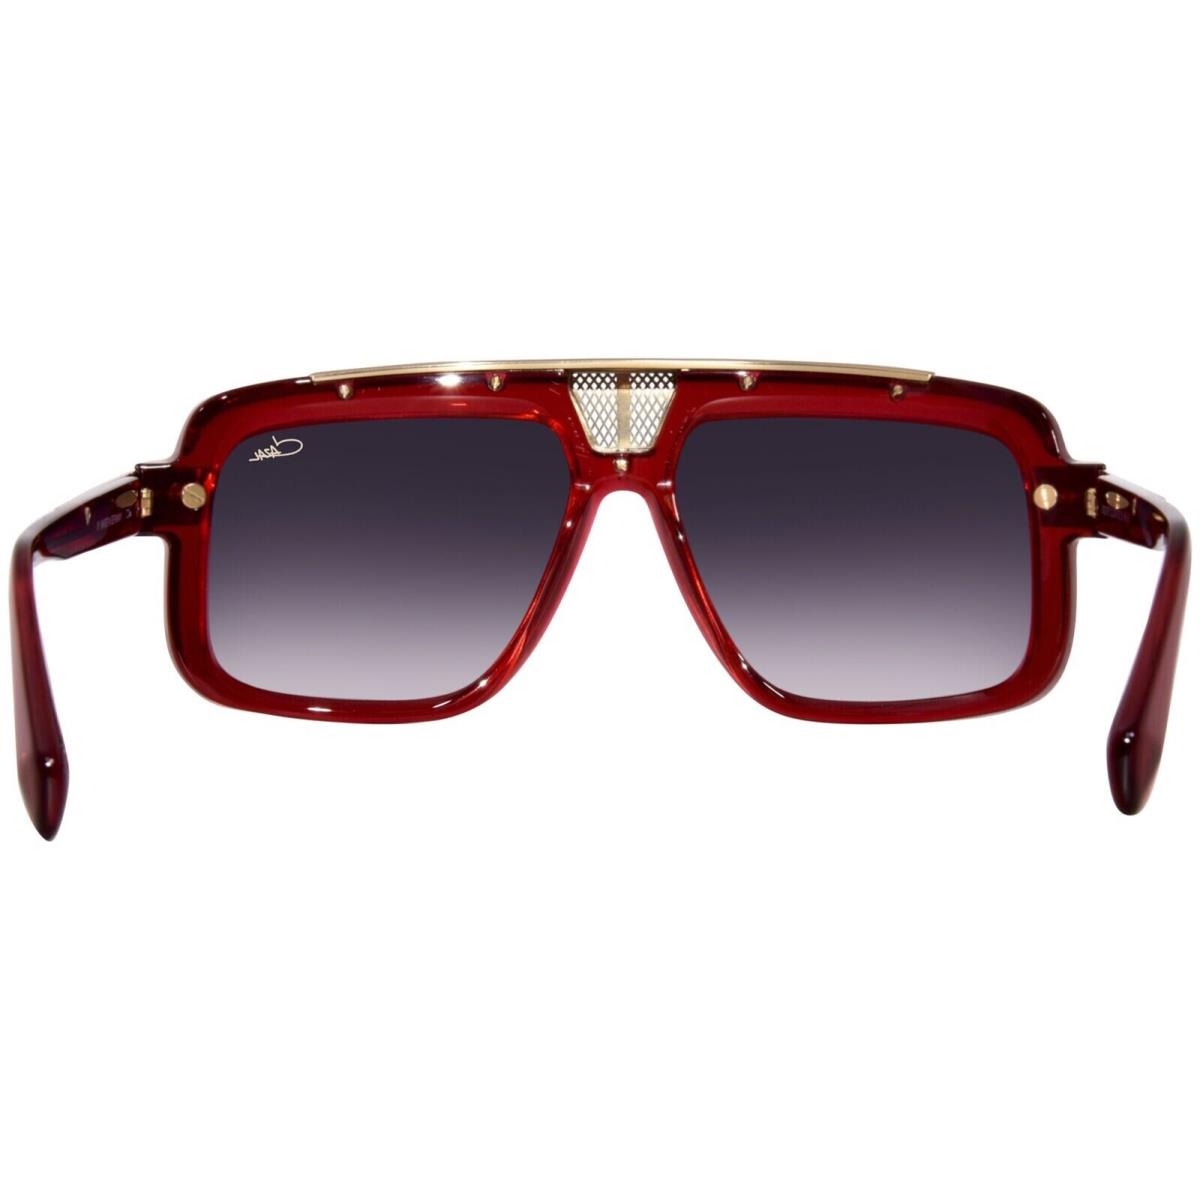 Cazal sunglasses  - Red/Gold Frame, Gray Lens